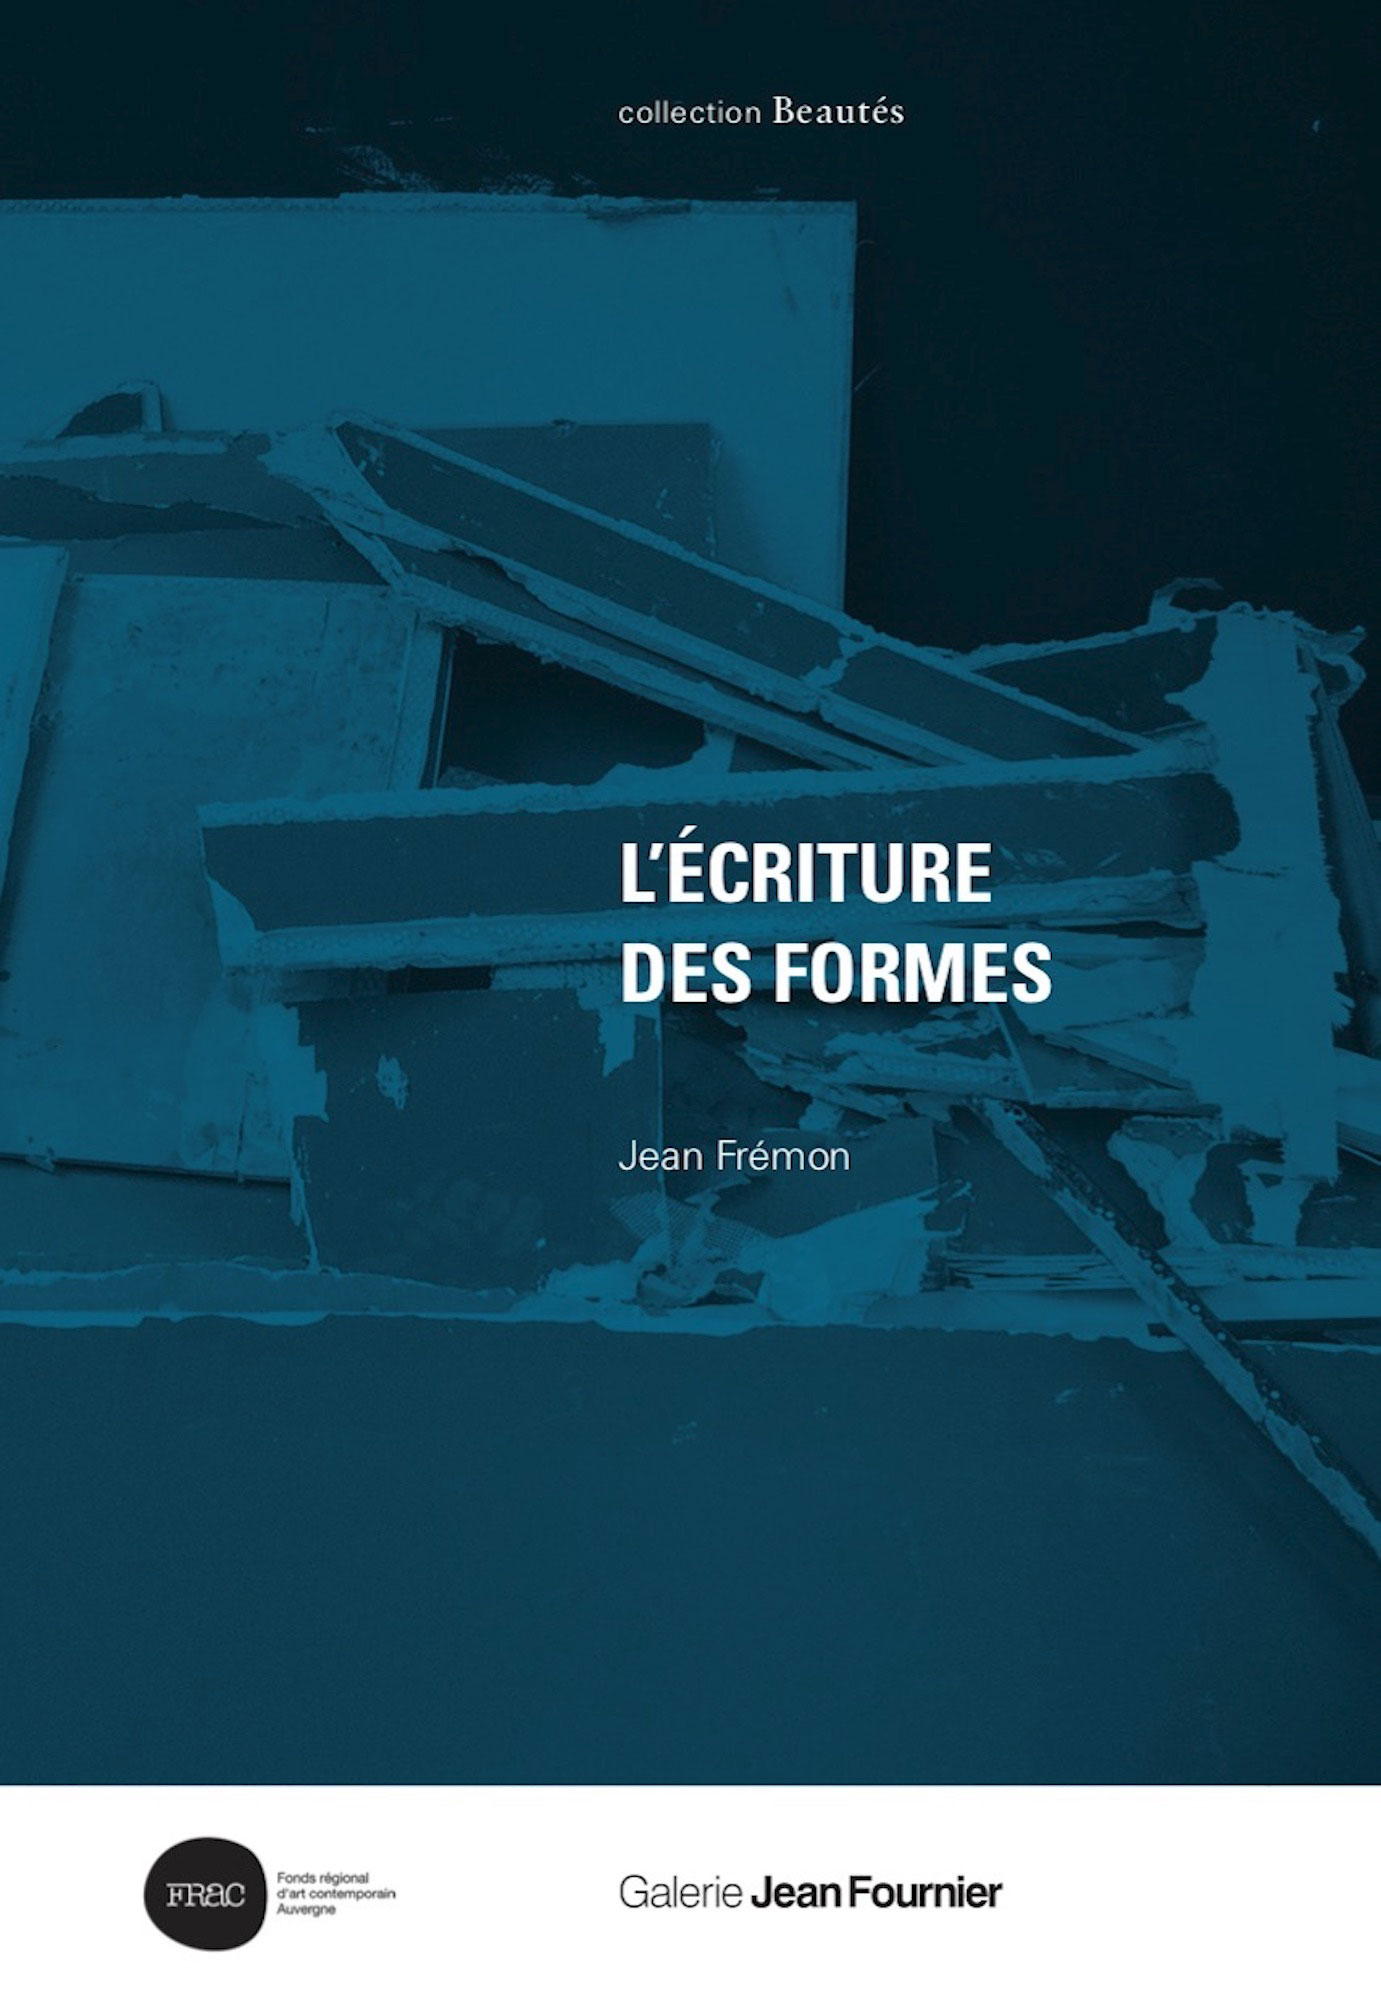 Beautés, Jean Frémon, L’Écriture des formes, Galerie Jean Fournier / FRAC Auvergne (couverture)